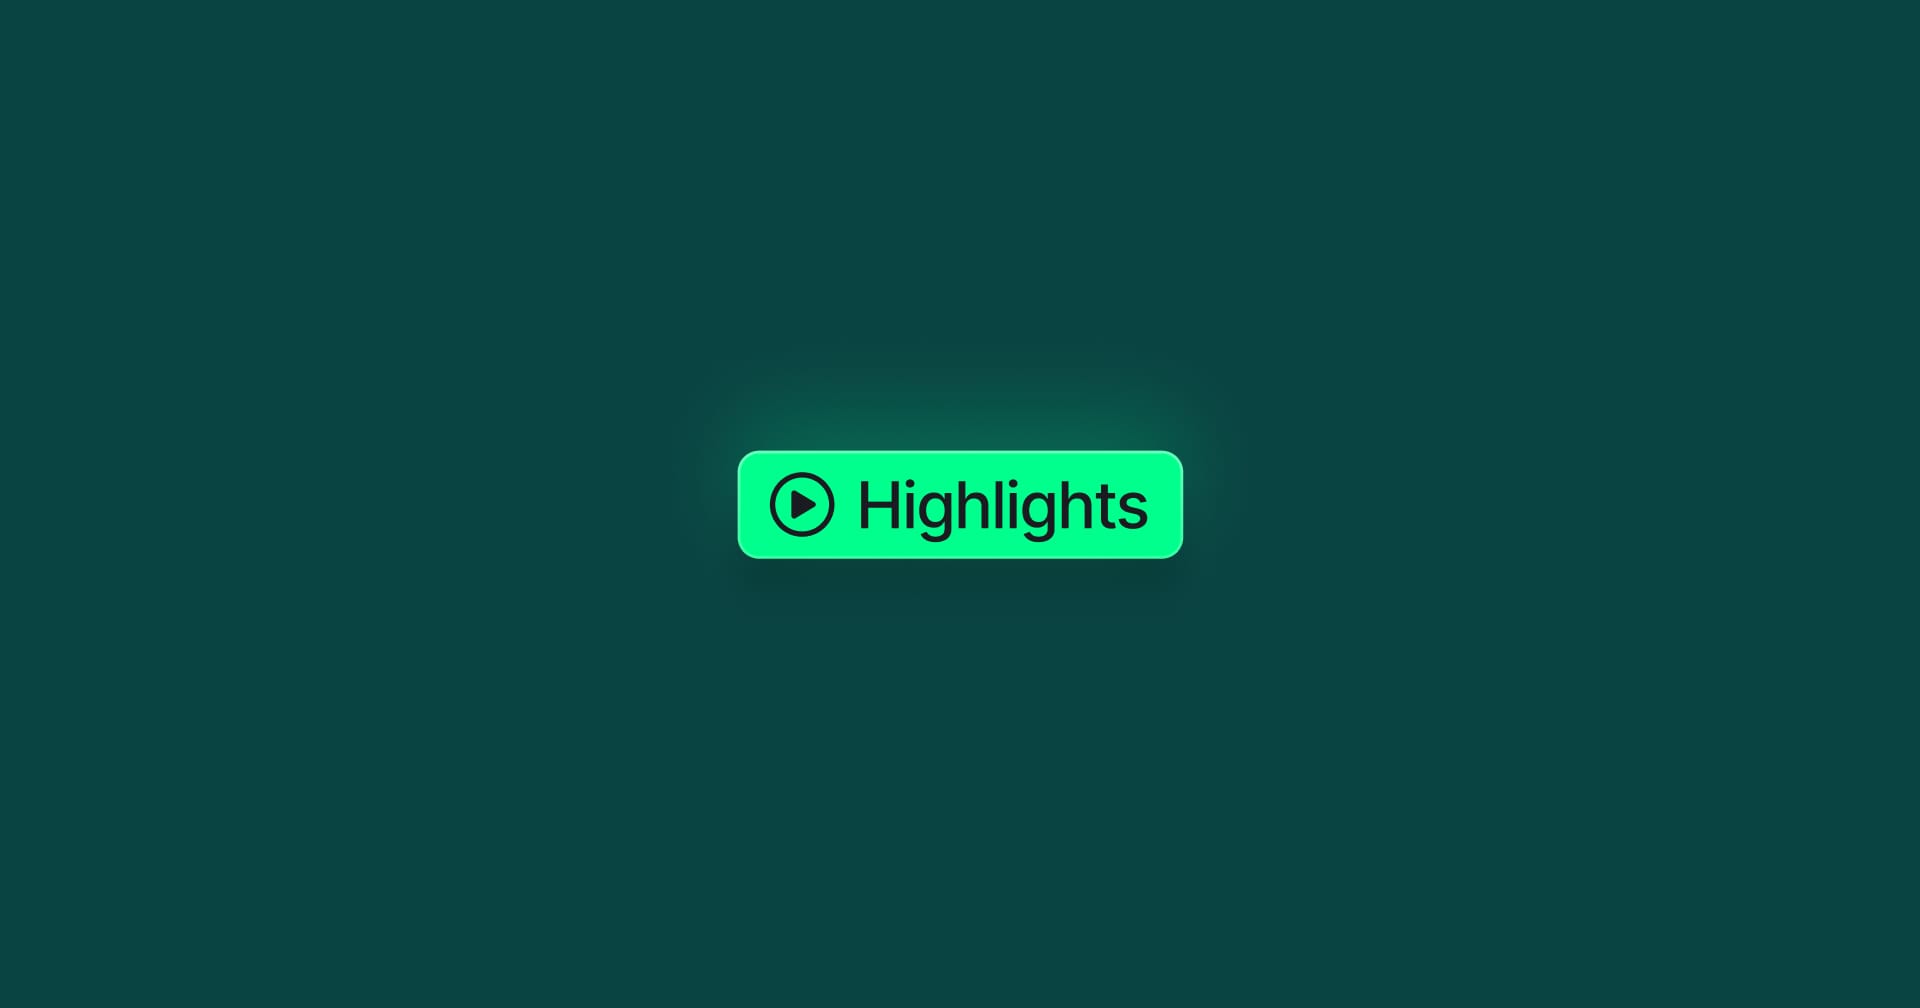 A green highlights button